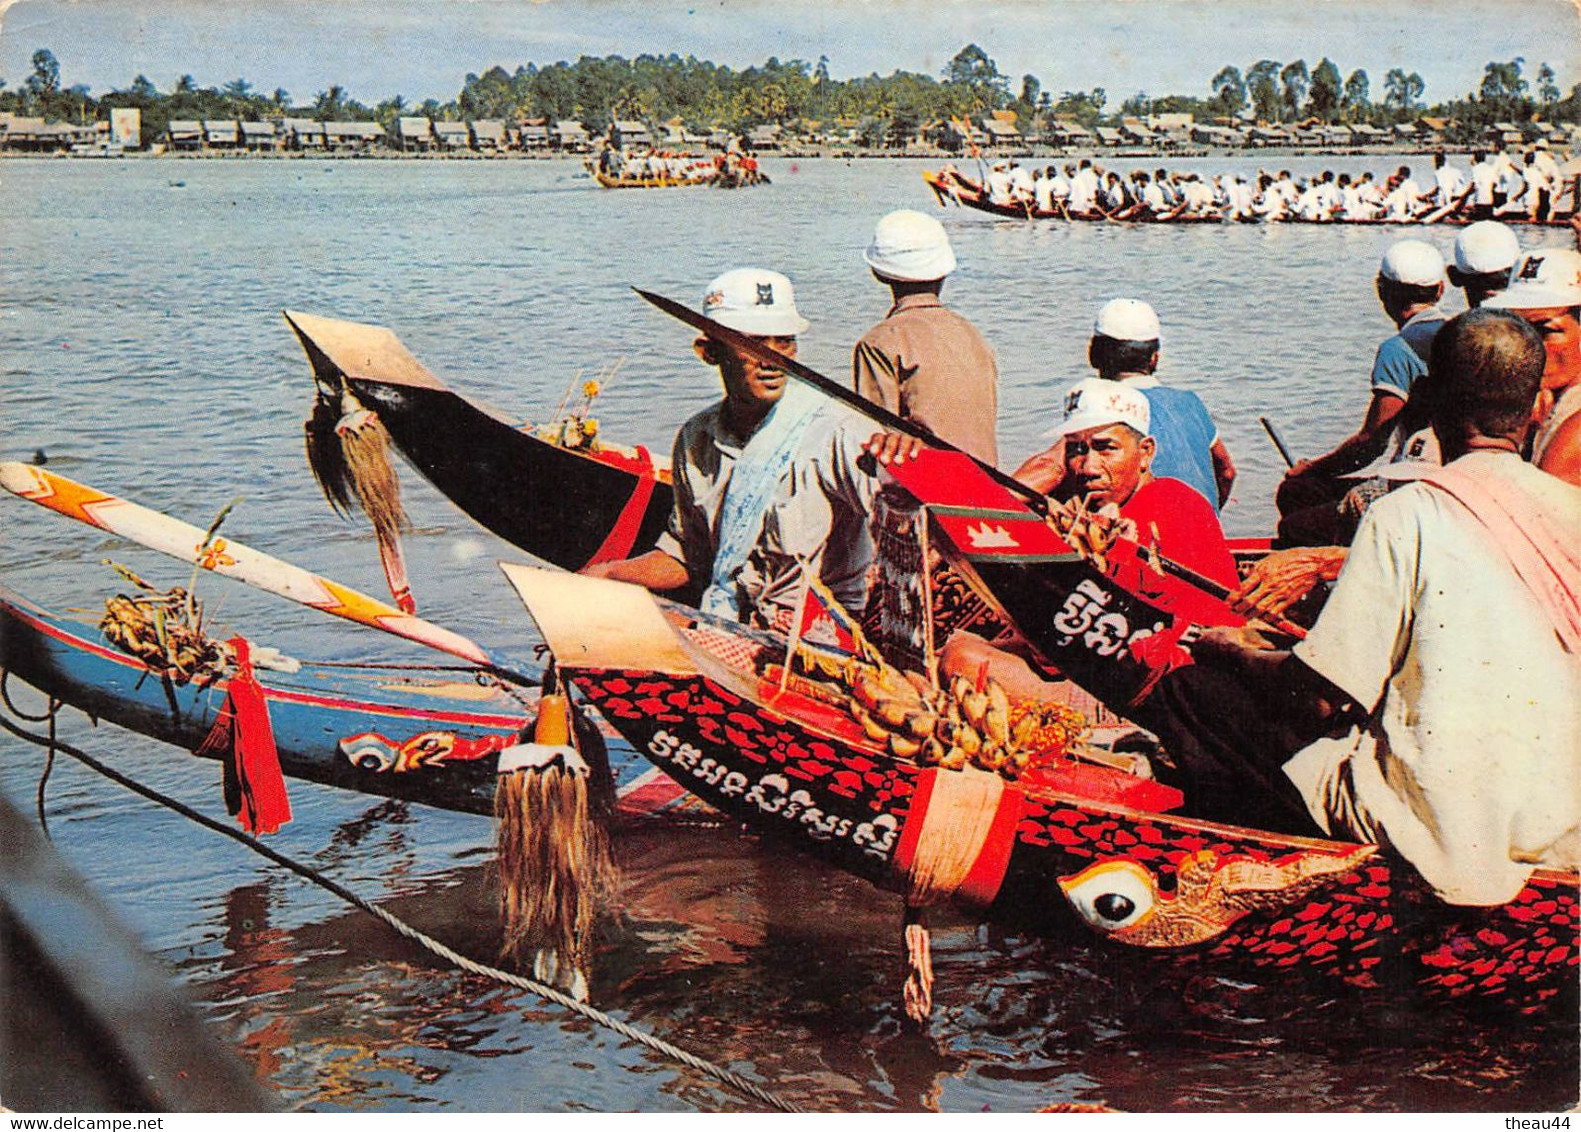 ¤¤  -    CAMBODGE   -  Fête Traditionnelle Des Eaux  -  La Course Des Pirogues      -   ¤¤ - Cambodge